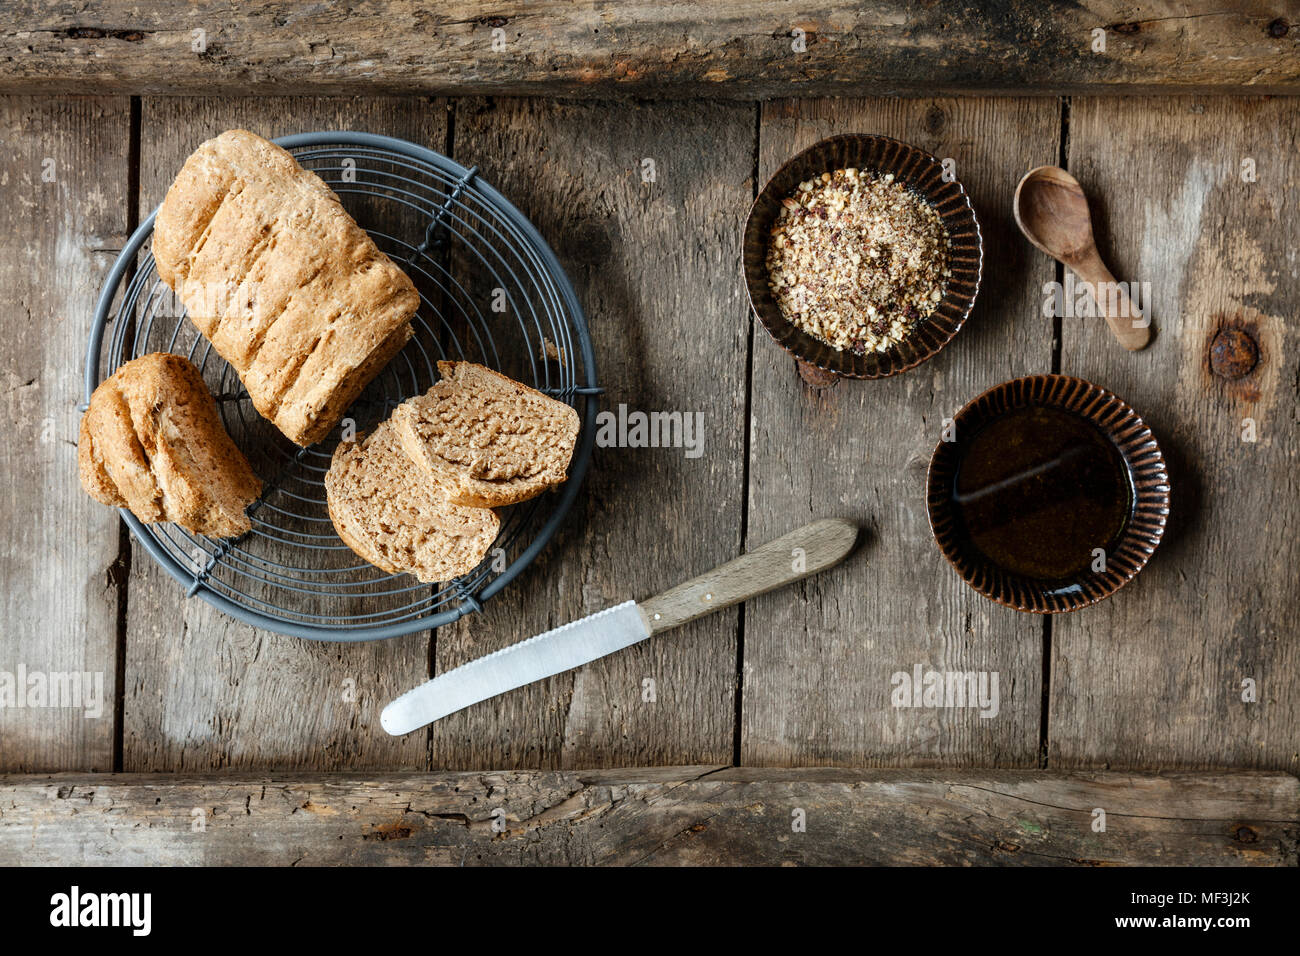 Traditionell ägyptische Mutter dukkah Spice Blend mit Brot und Olivenöl Stockfoto